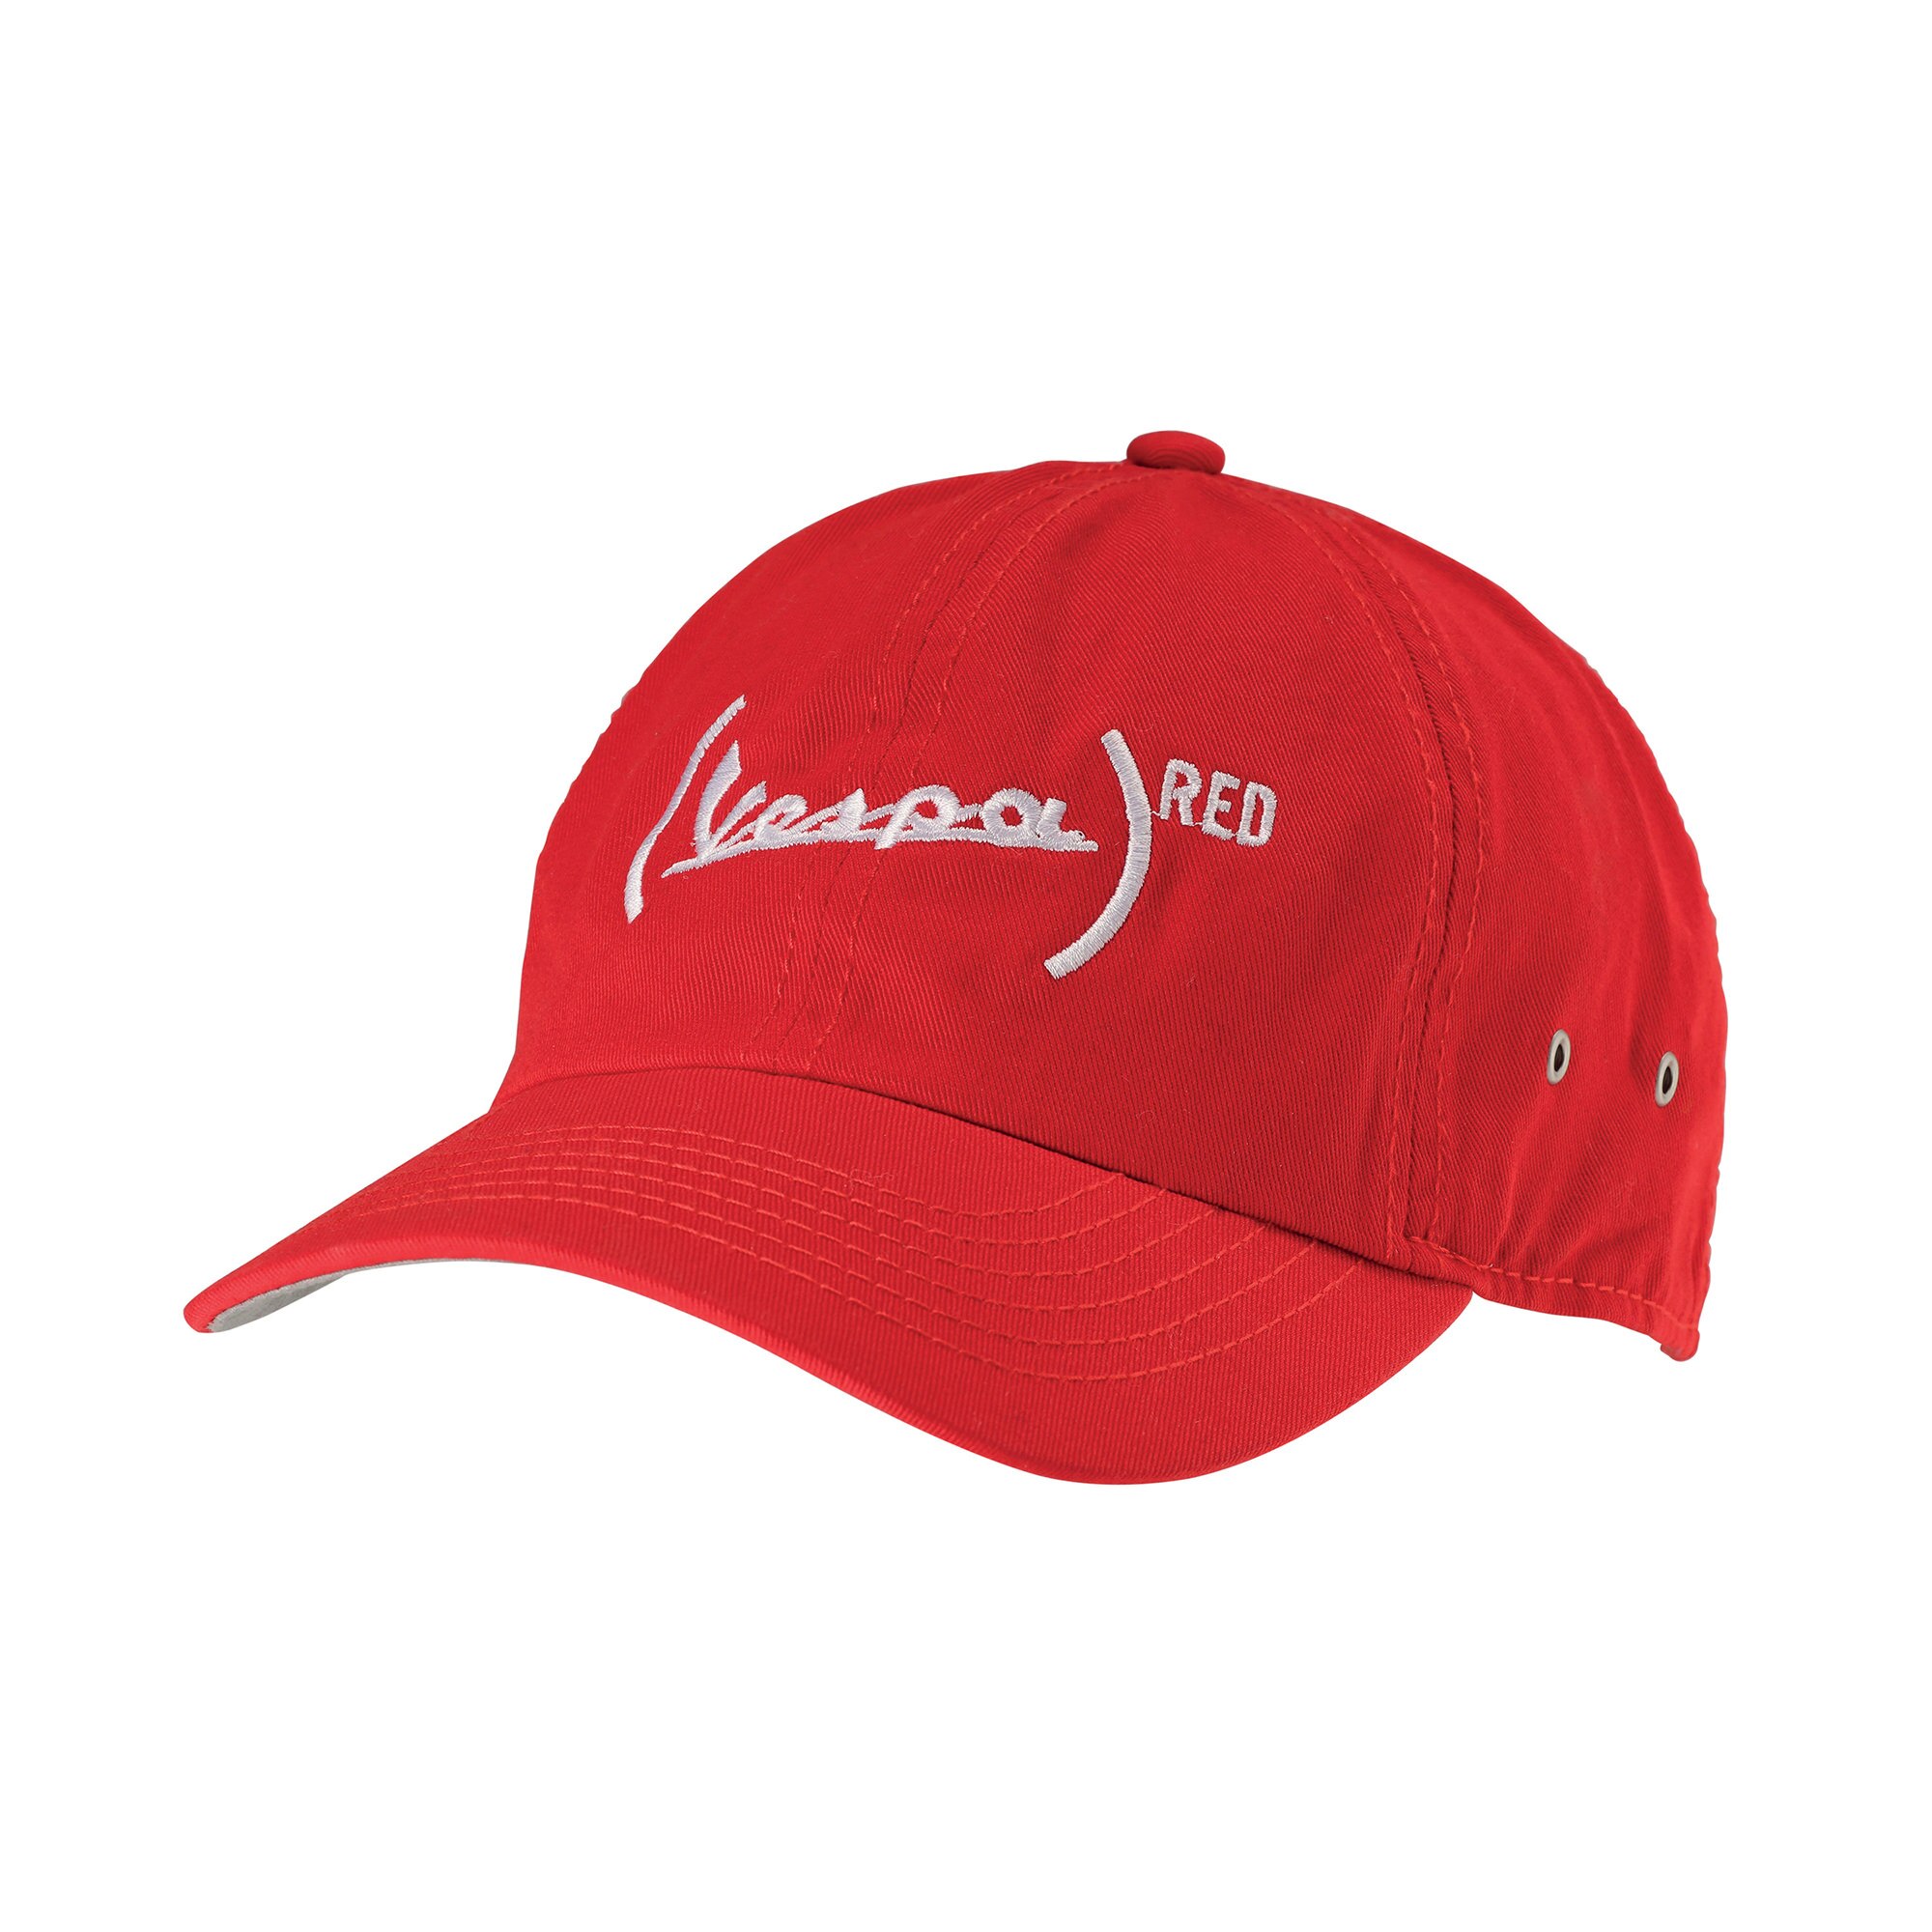 (VESPA)RED Cap for Vespa 606531m| Vespa